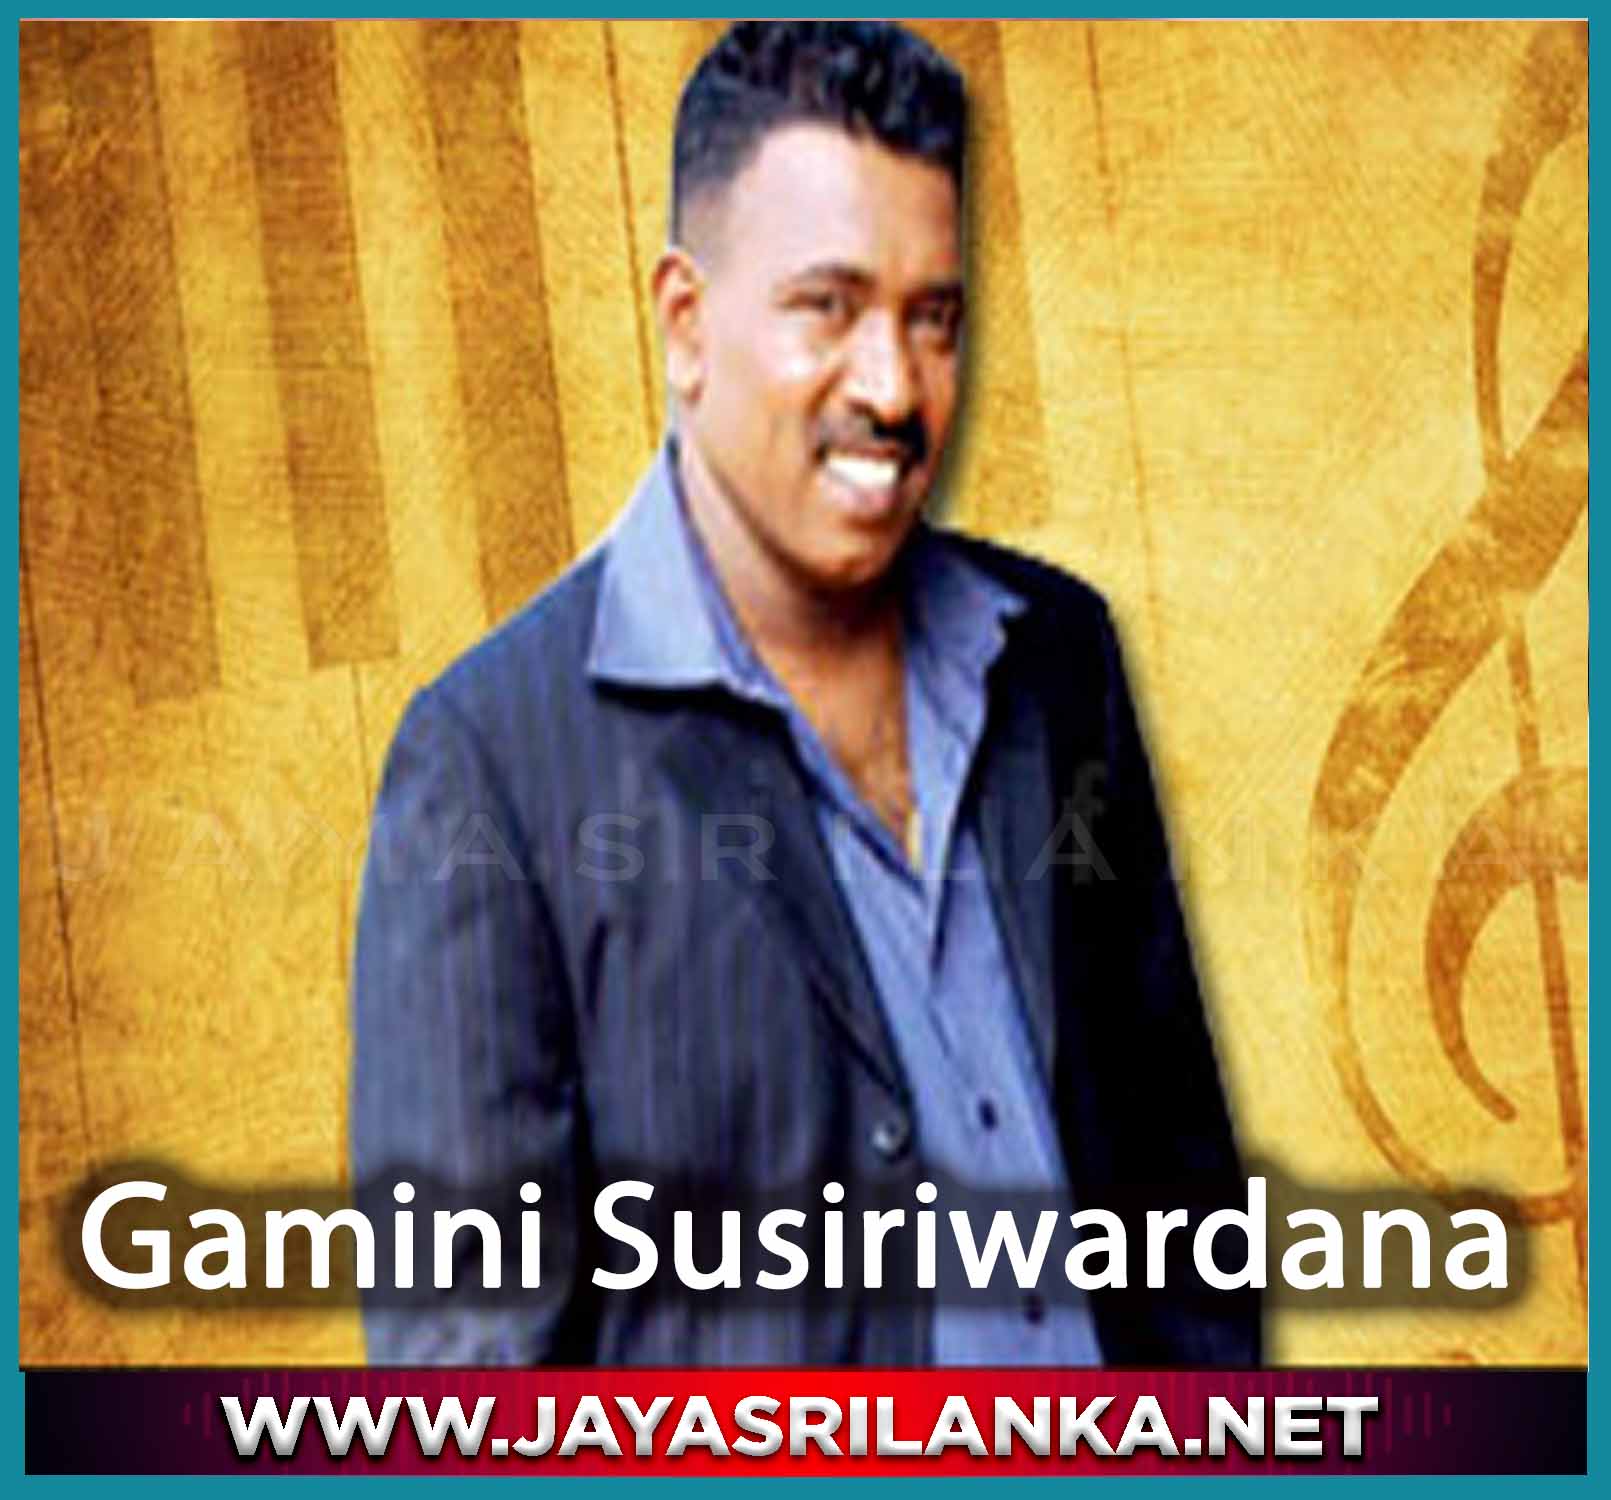 Hamuwanna Dakaganna - Gamini Susiriwardana mp3 Image